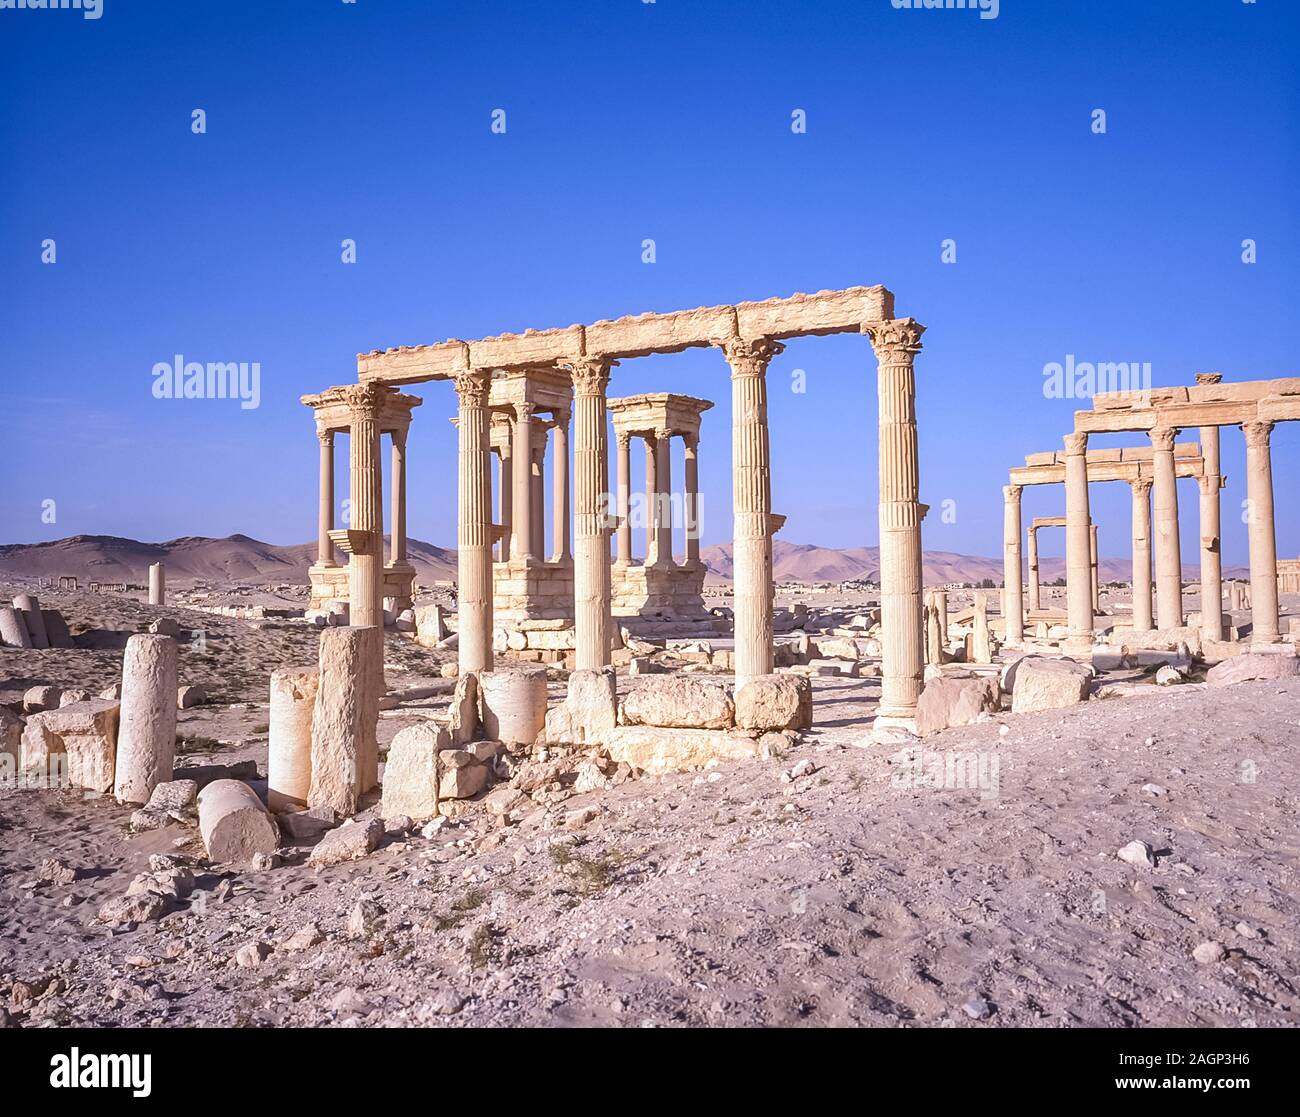 Syrien. Die Ruinen der römischen Stadt Palmyra, die um 200 bis 250 n. Chr. erbaut wurden, projizierten große Ausmaße und Wohlstand der alten Welt unter römischer Herrschaft. Die Stadt wurde von der großen Festung der Königin Zenobia übersehen, die den mentalen Zustand ständig von der Autorität des allmächtigen Roms in Frage gestellt hatte, was zur Entstehung des Wortes Zenophobie und Zenophobie führte Stockfoto